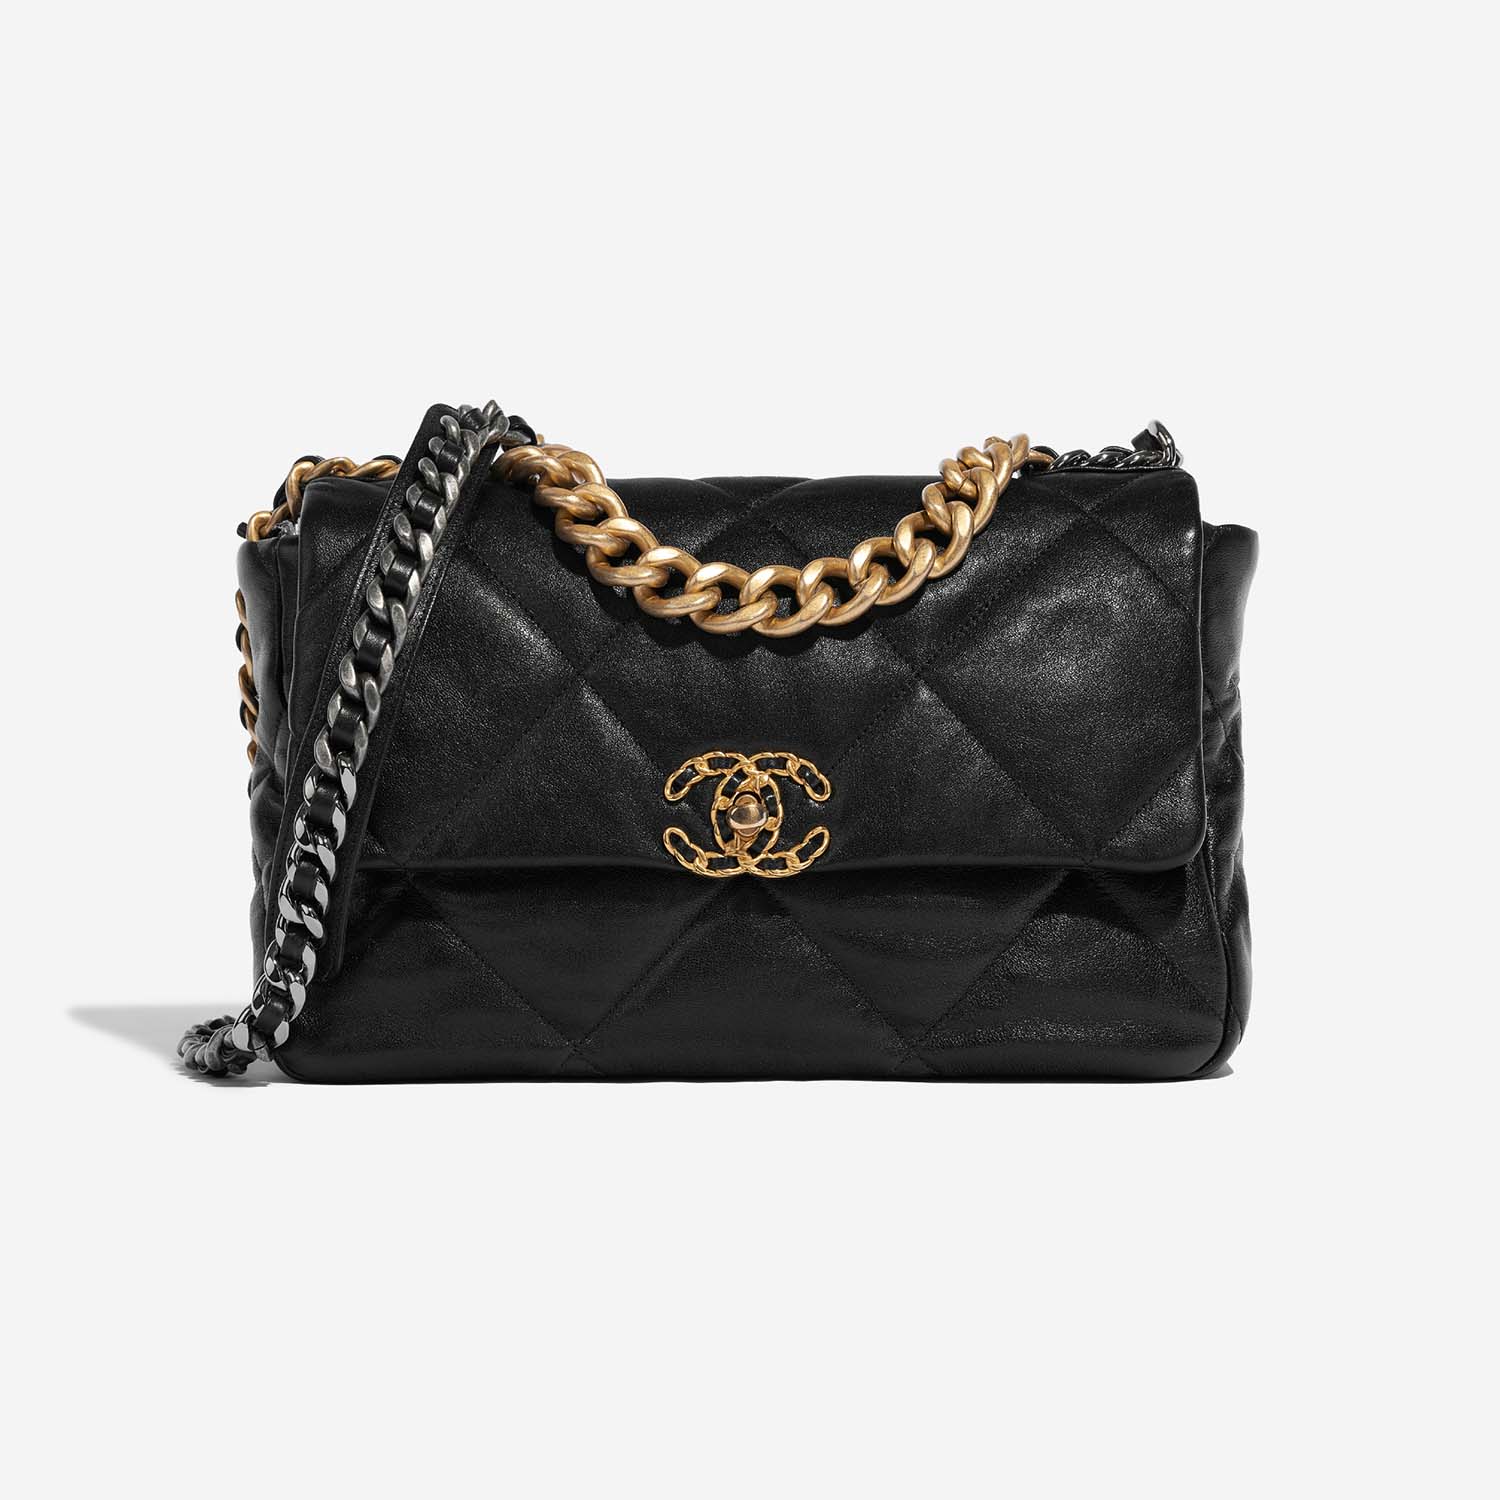 Chanel 19 LargeFlapBag Schwarz 2F S | Verkaufen Sie Ihre Designertasche auf Saclab.com